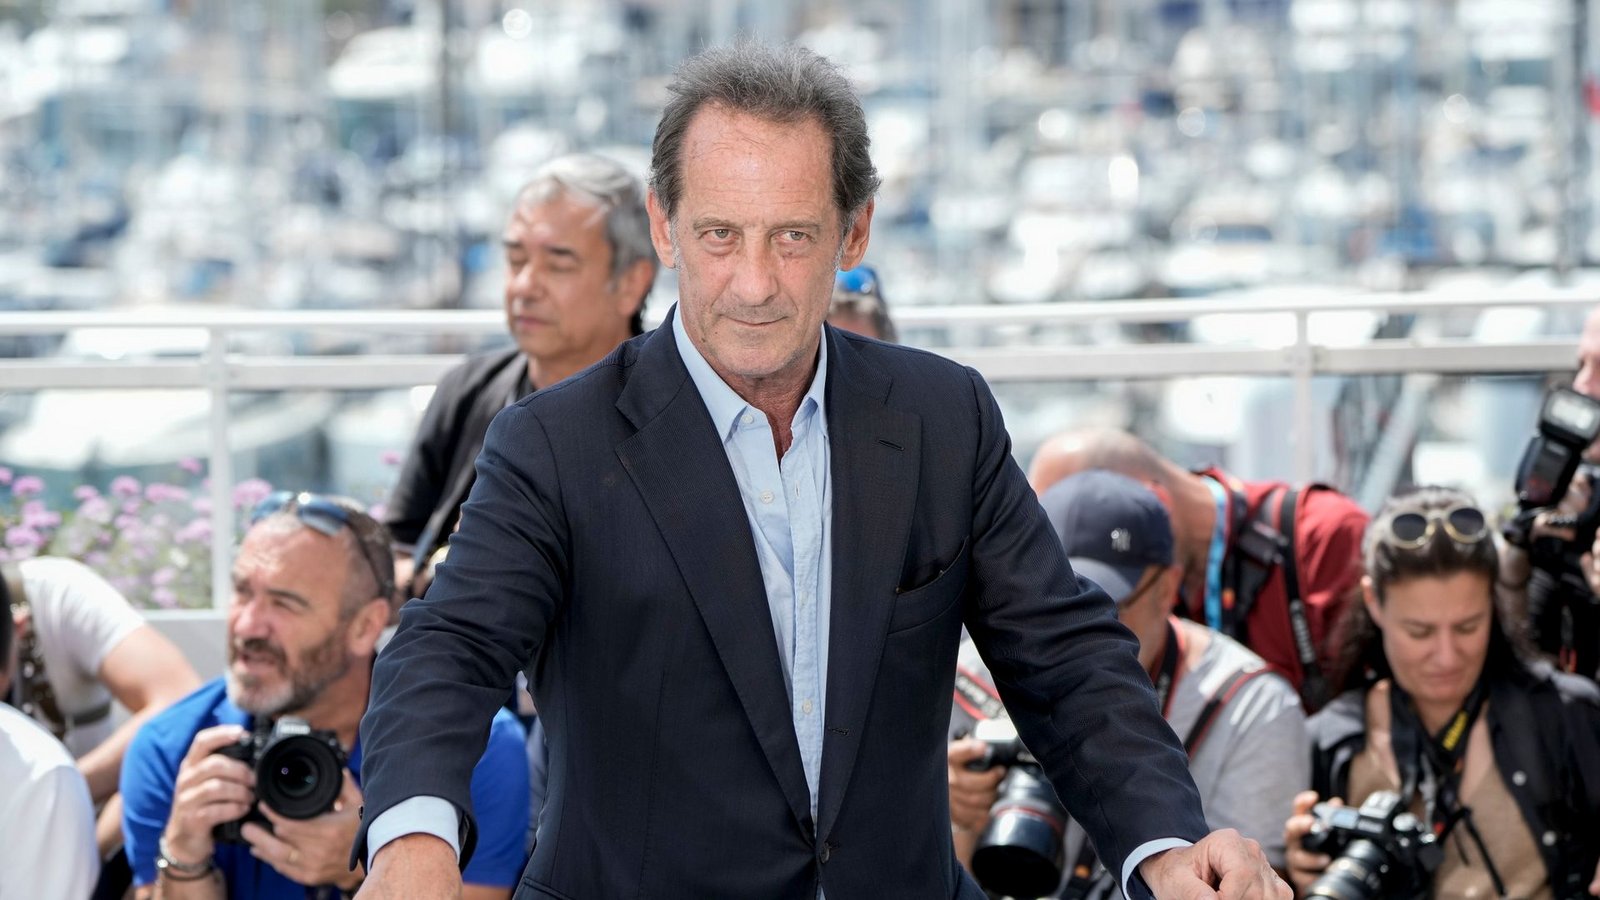 Der französische Schauspieler Vincent Lindon ist Jury-Präsident in Cannes.Foto: Joel C Ryan/Invision/AP/dpa